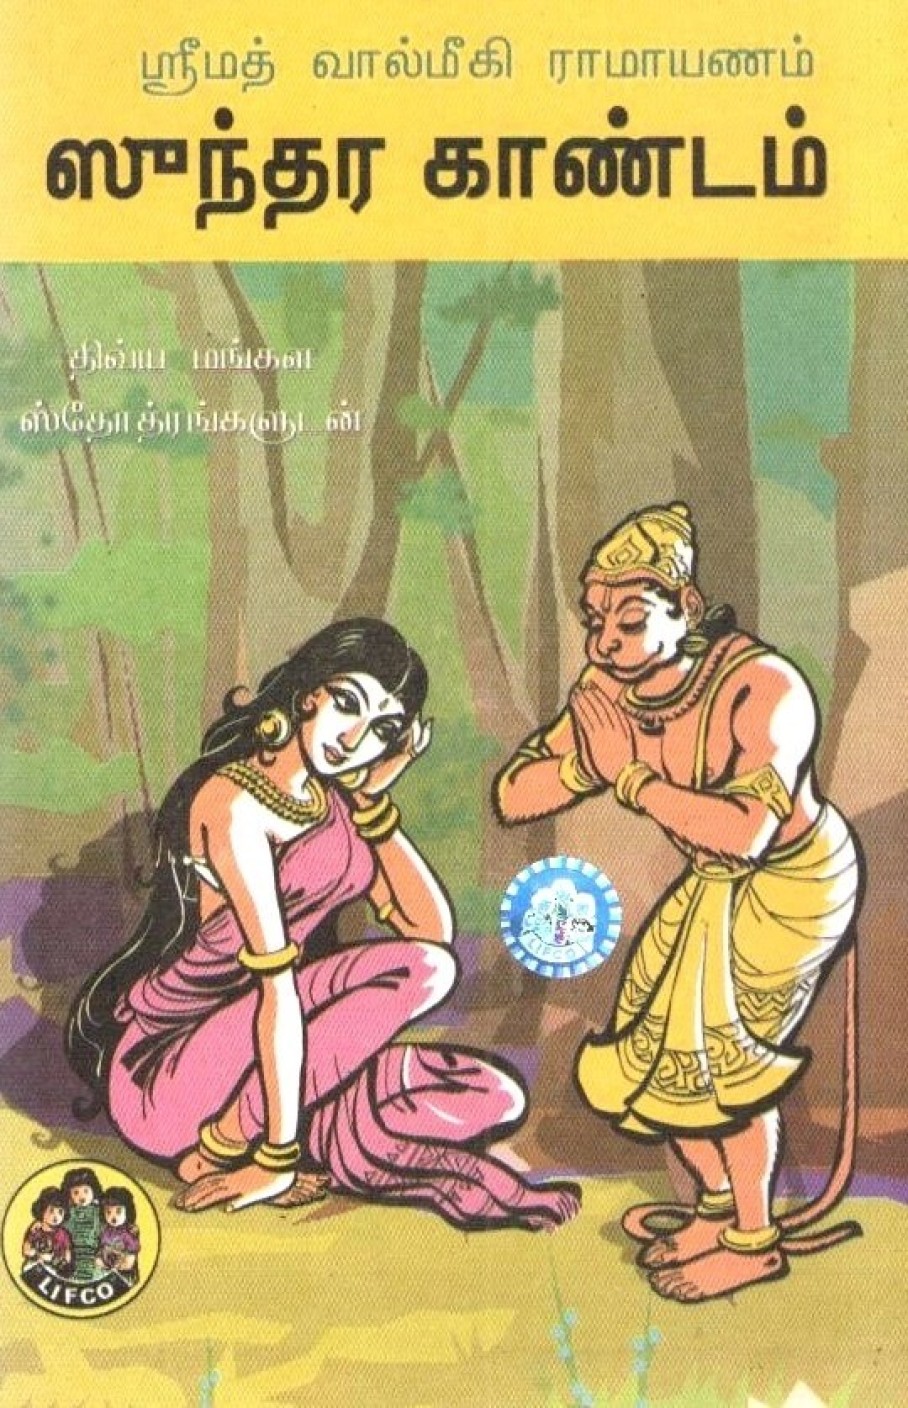 kandam sundara tamil meaning moolam srinivasa